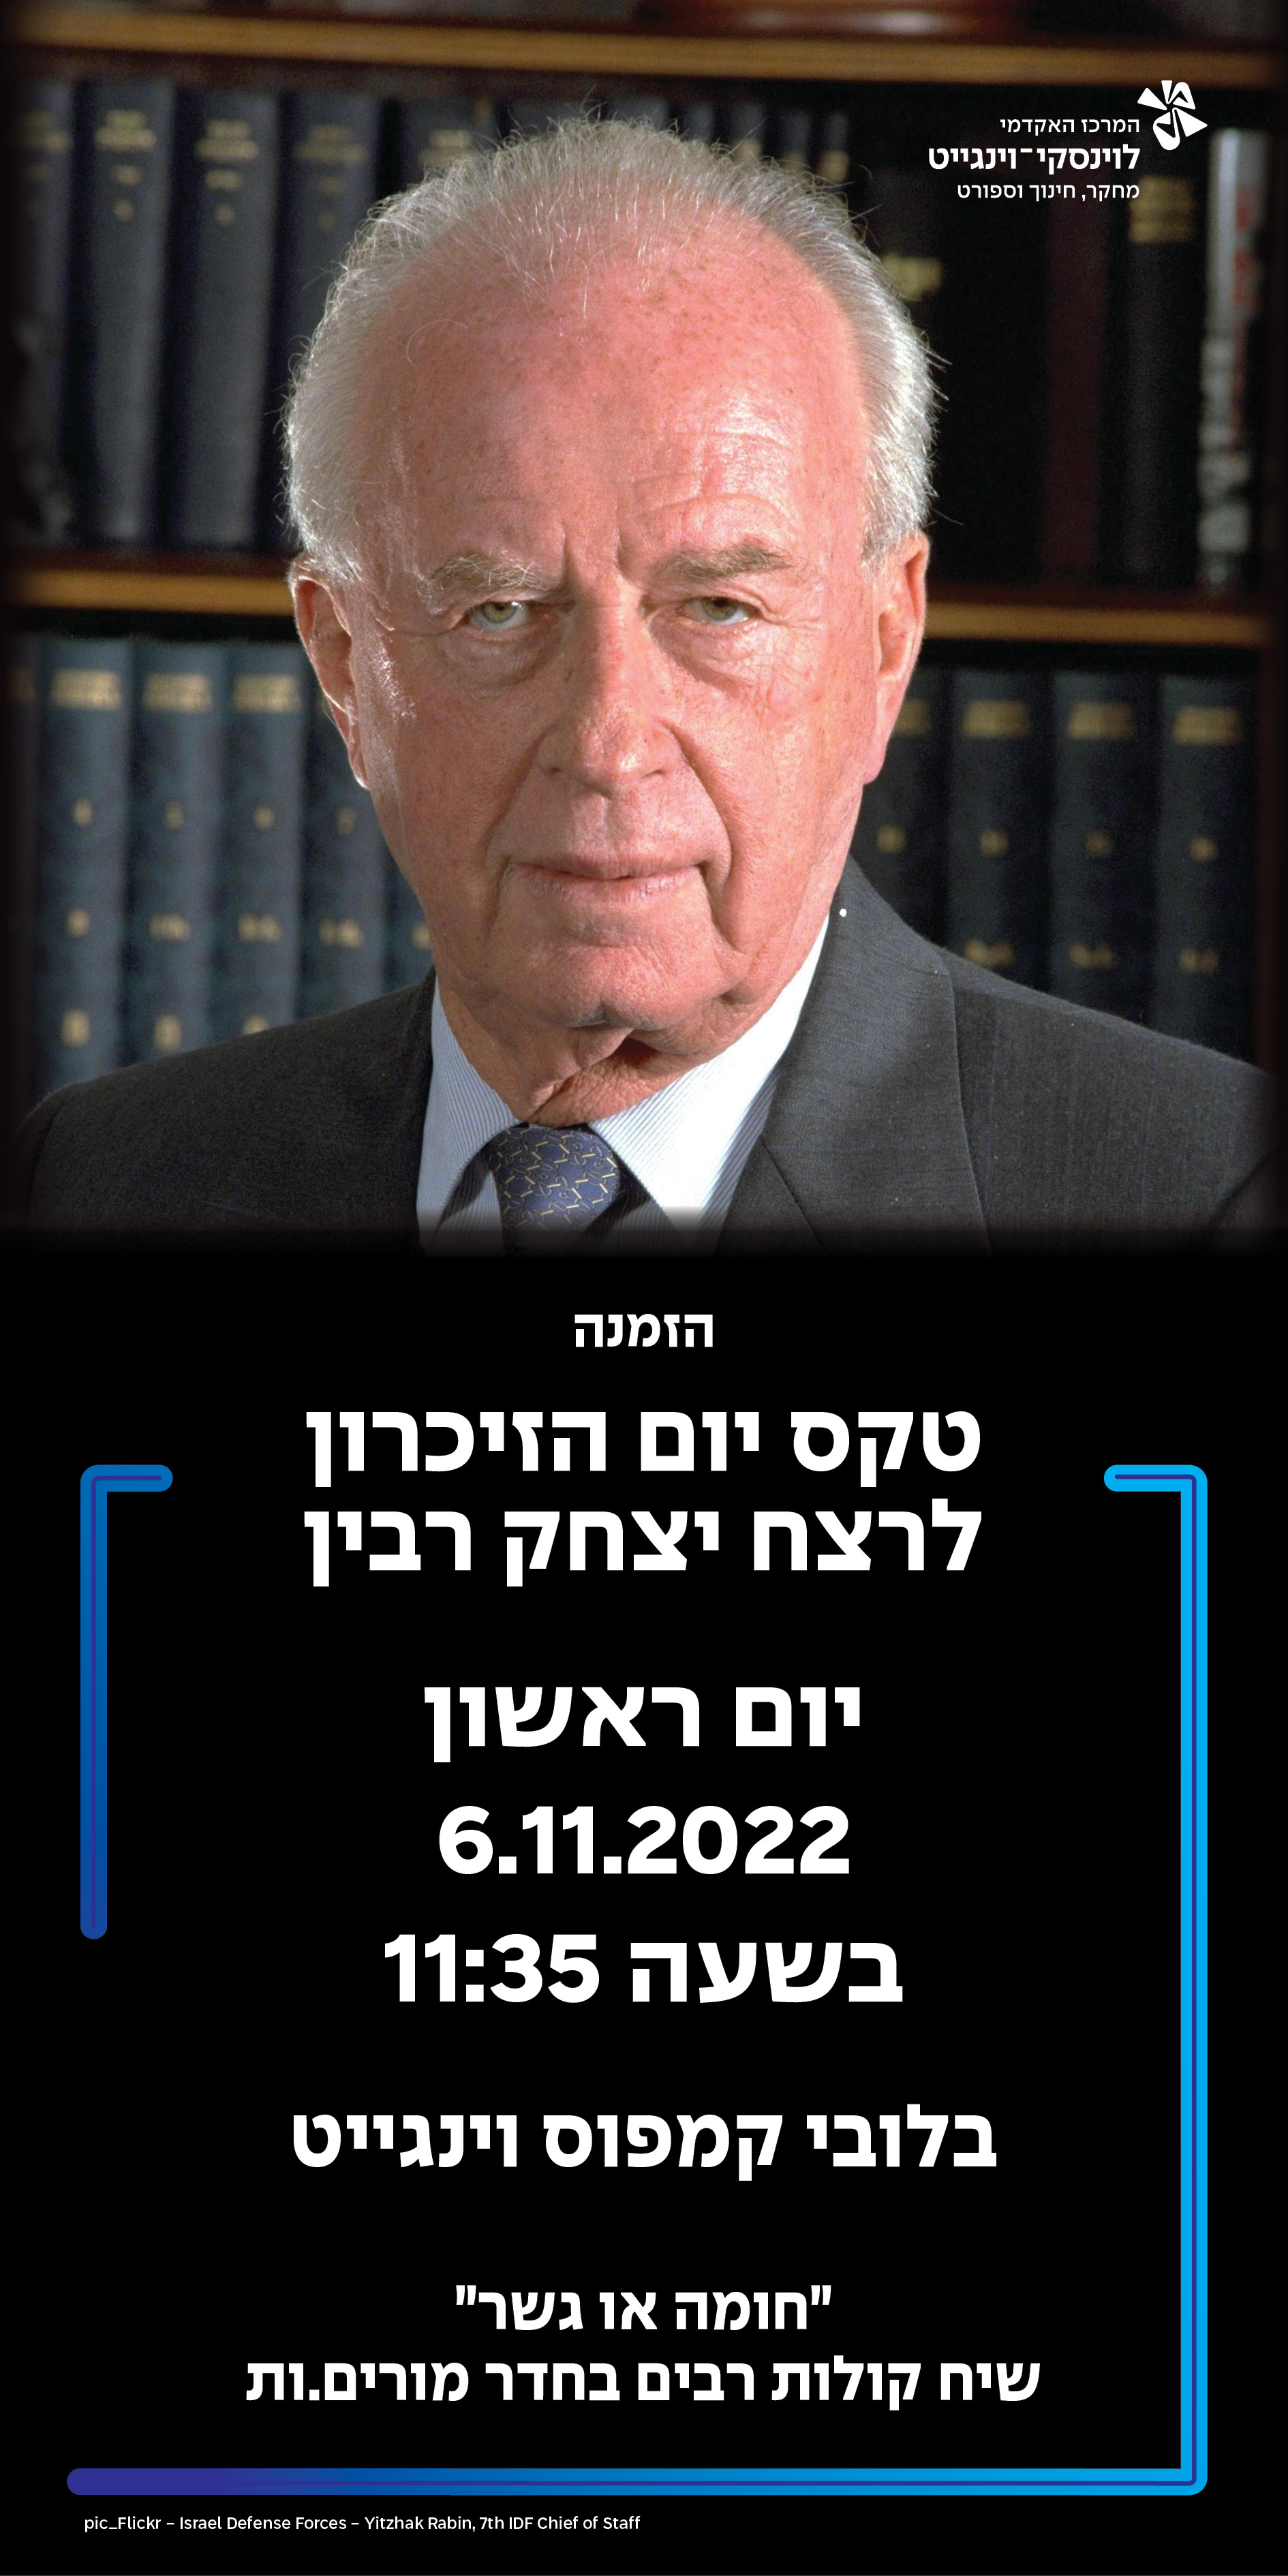 טקס לזכרו של ראש הממשלה יצחק רבין ז"ל